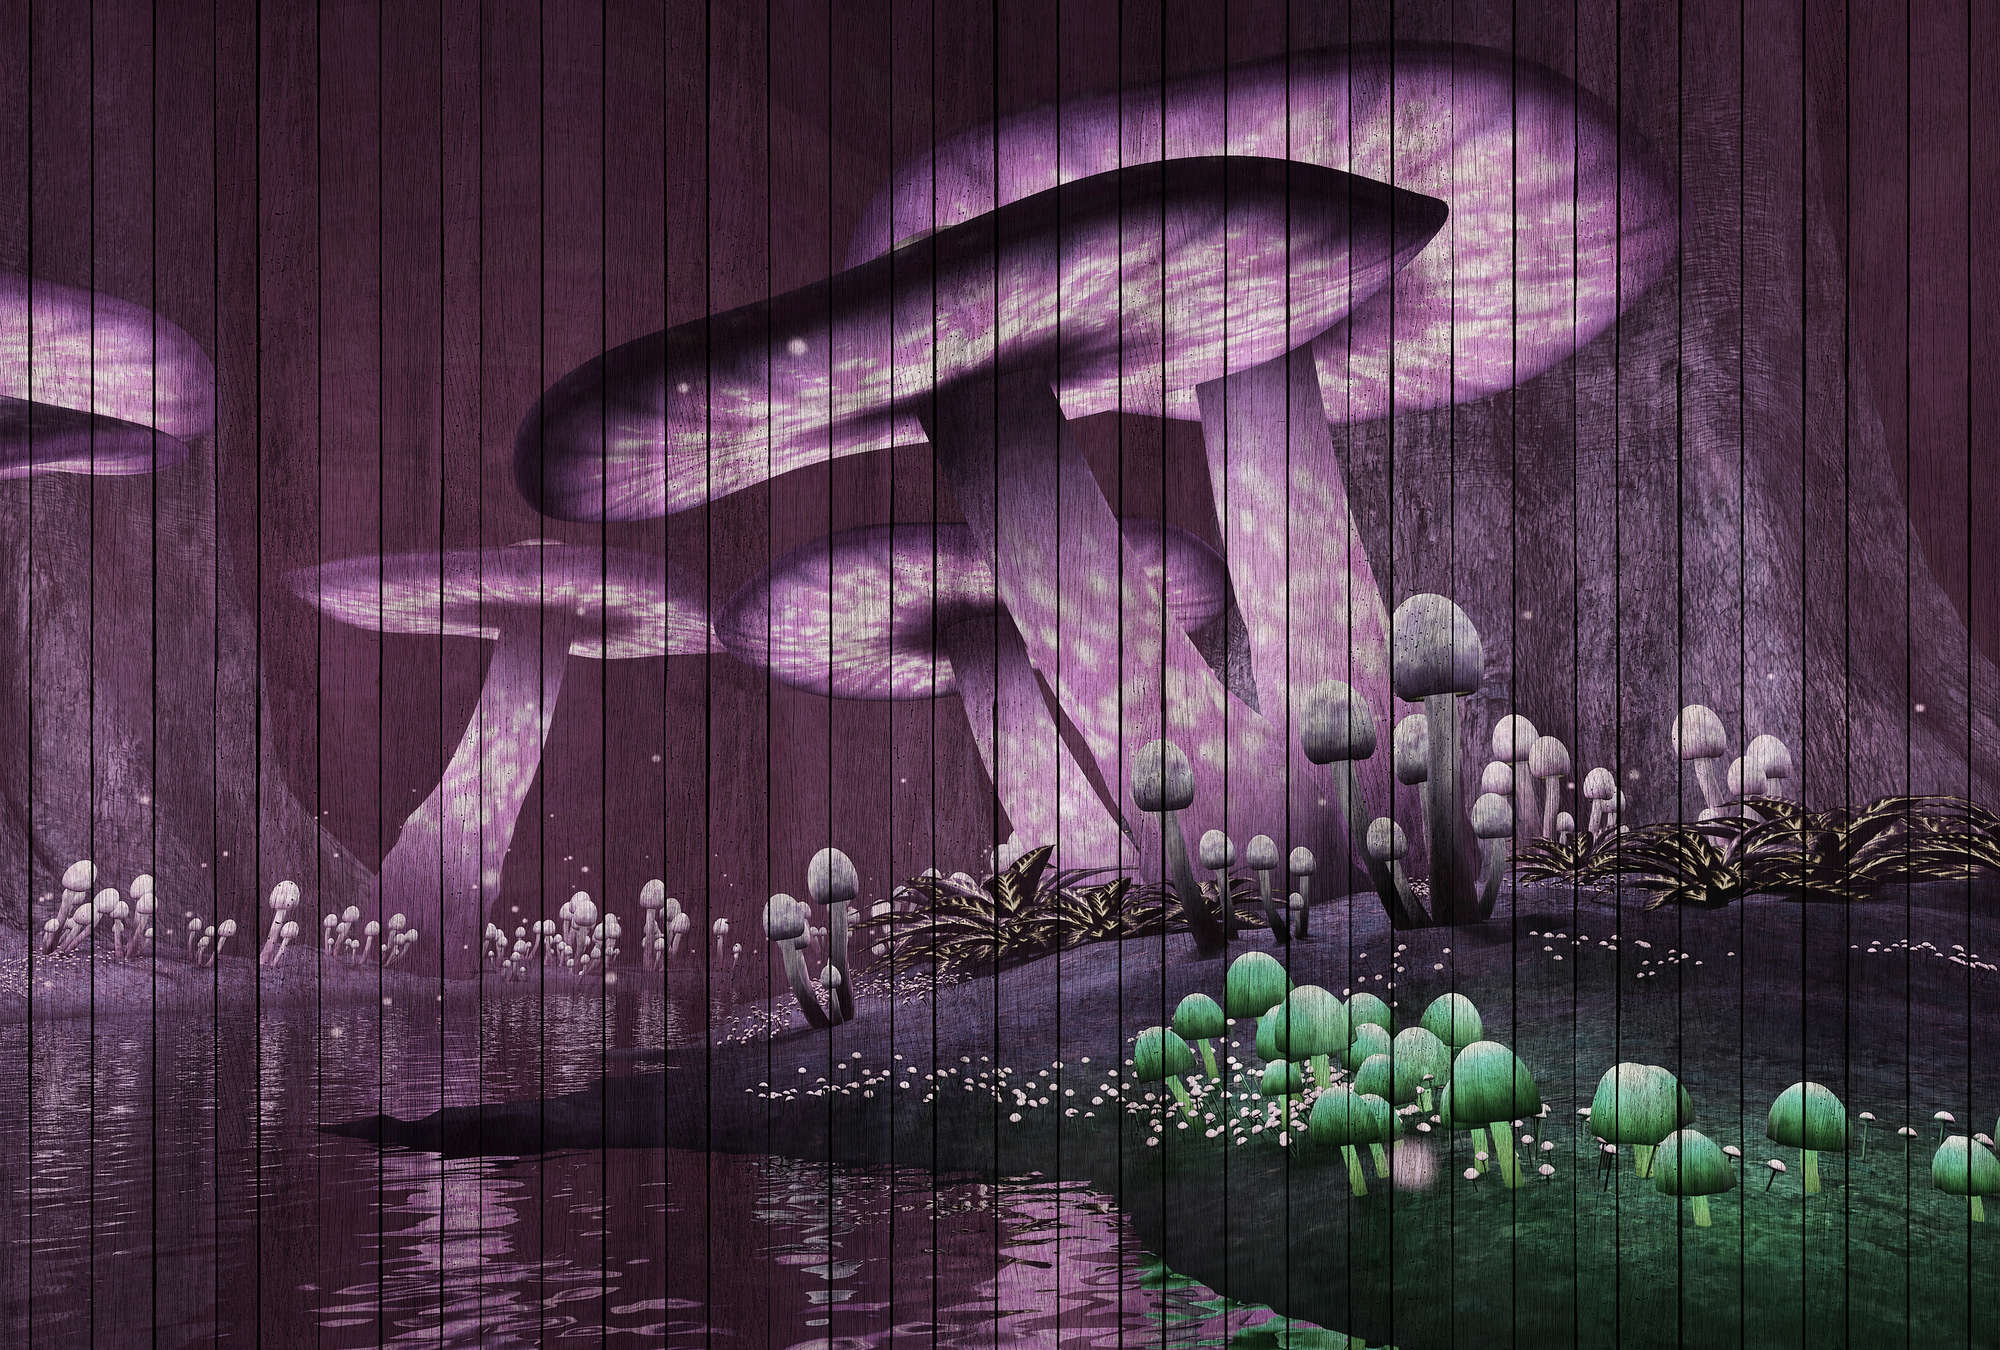             Fantasy 2 - Papier peint forêt magique avec structure en panneaux de bois - vert, violet | Premium intissé lisse
        